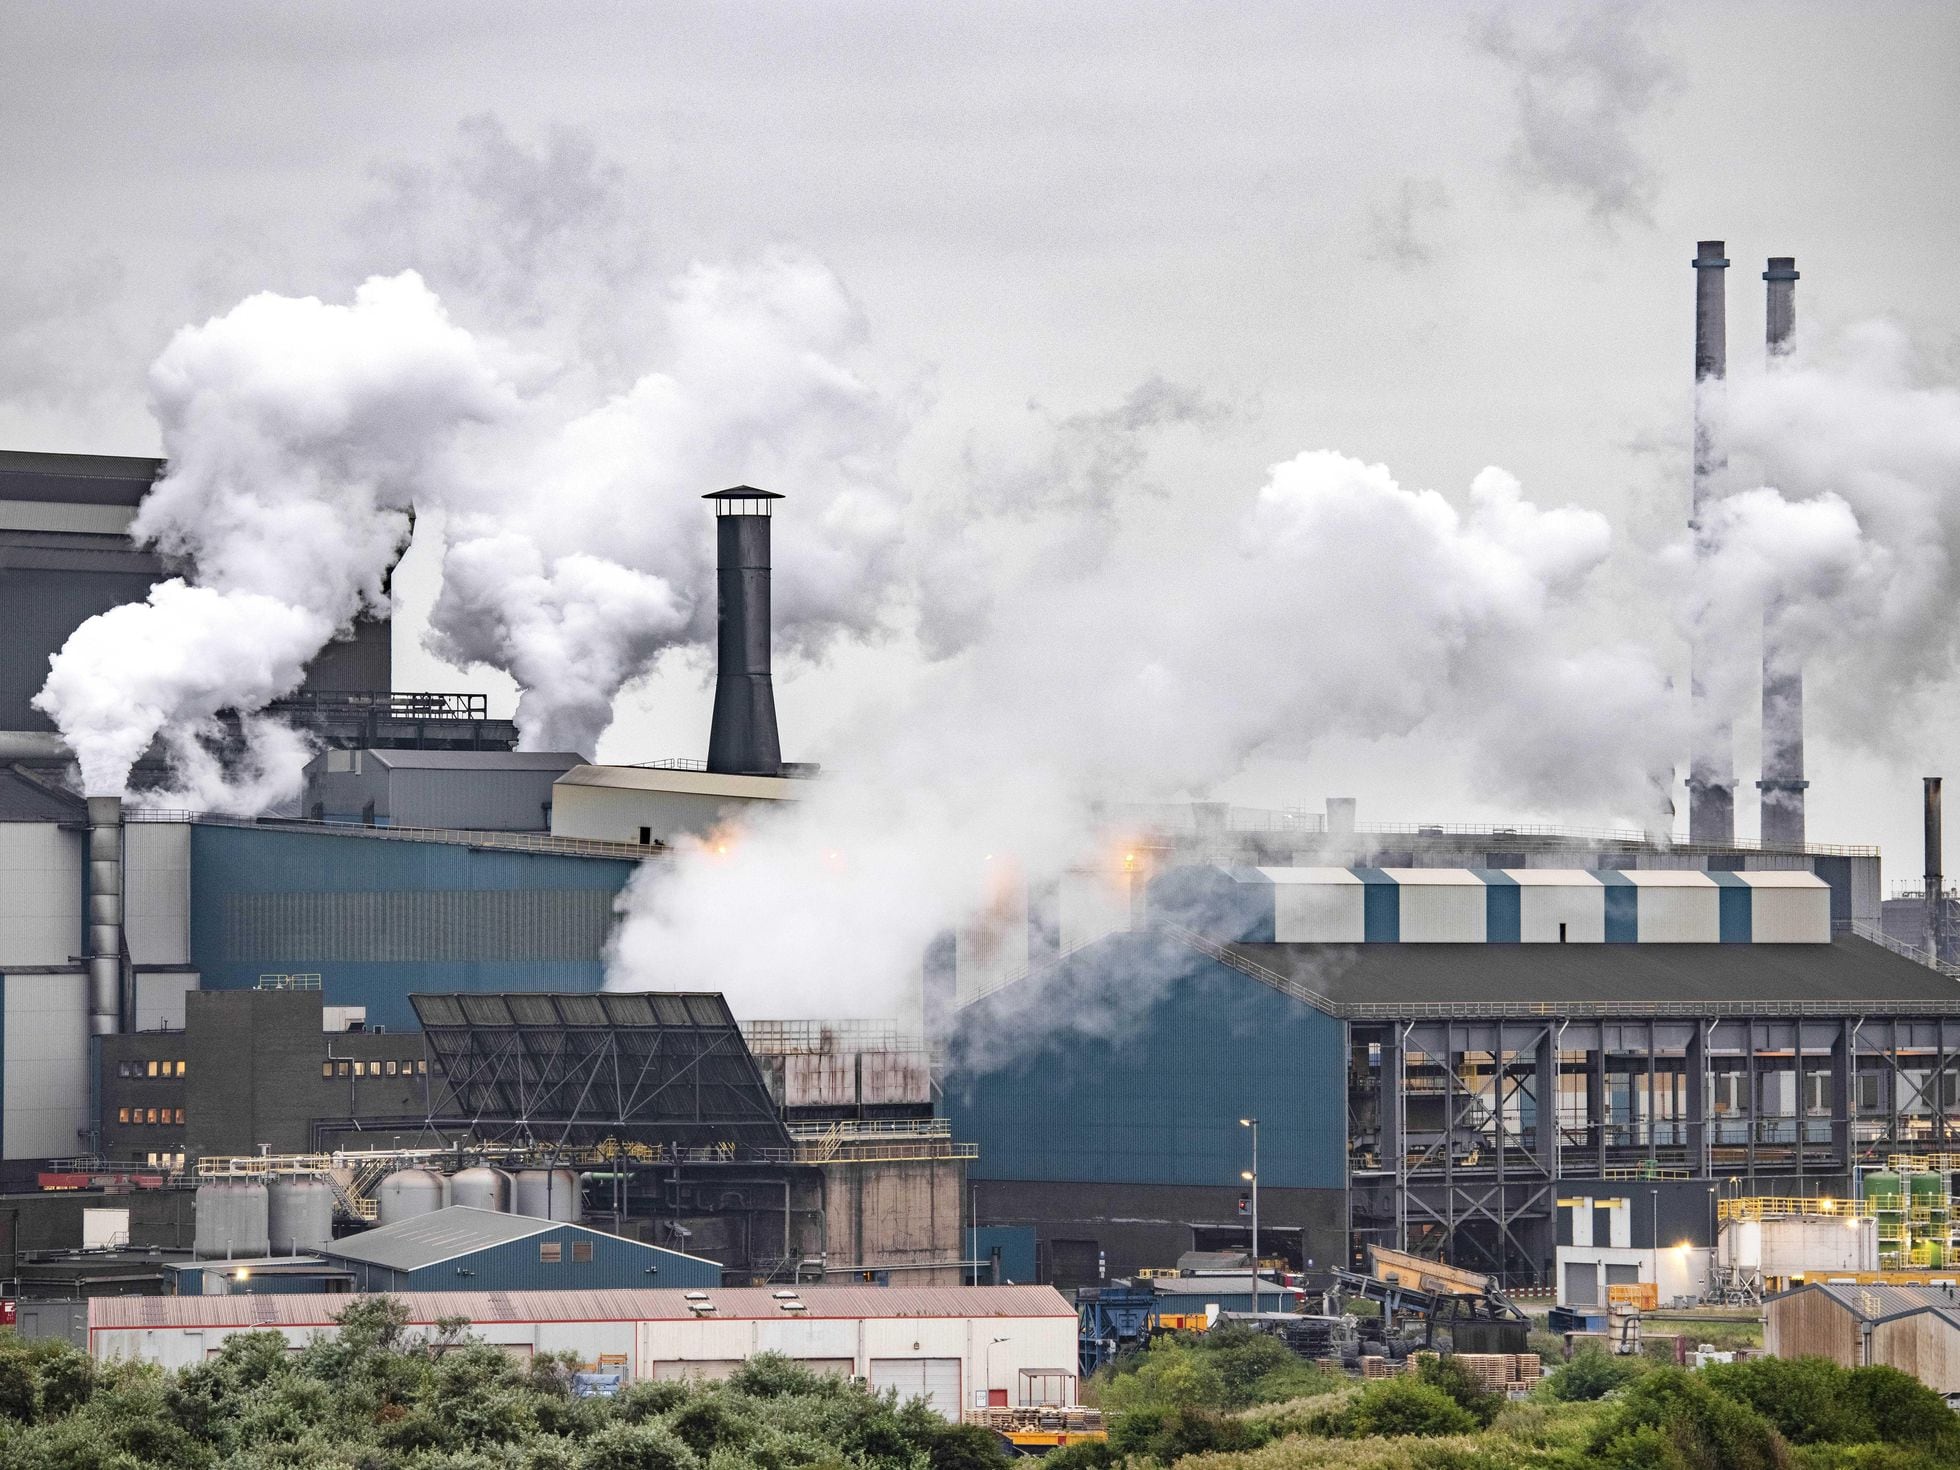 Elevan requerimientos ambientales a Tata Steel en Holanda